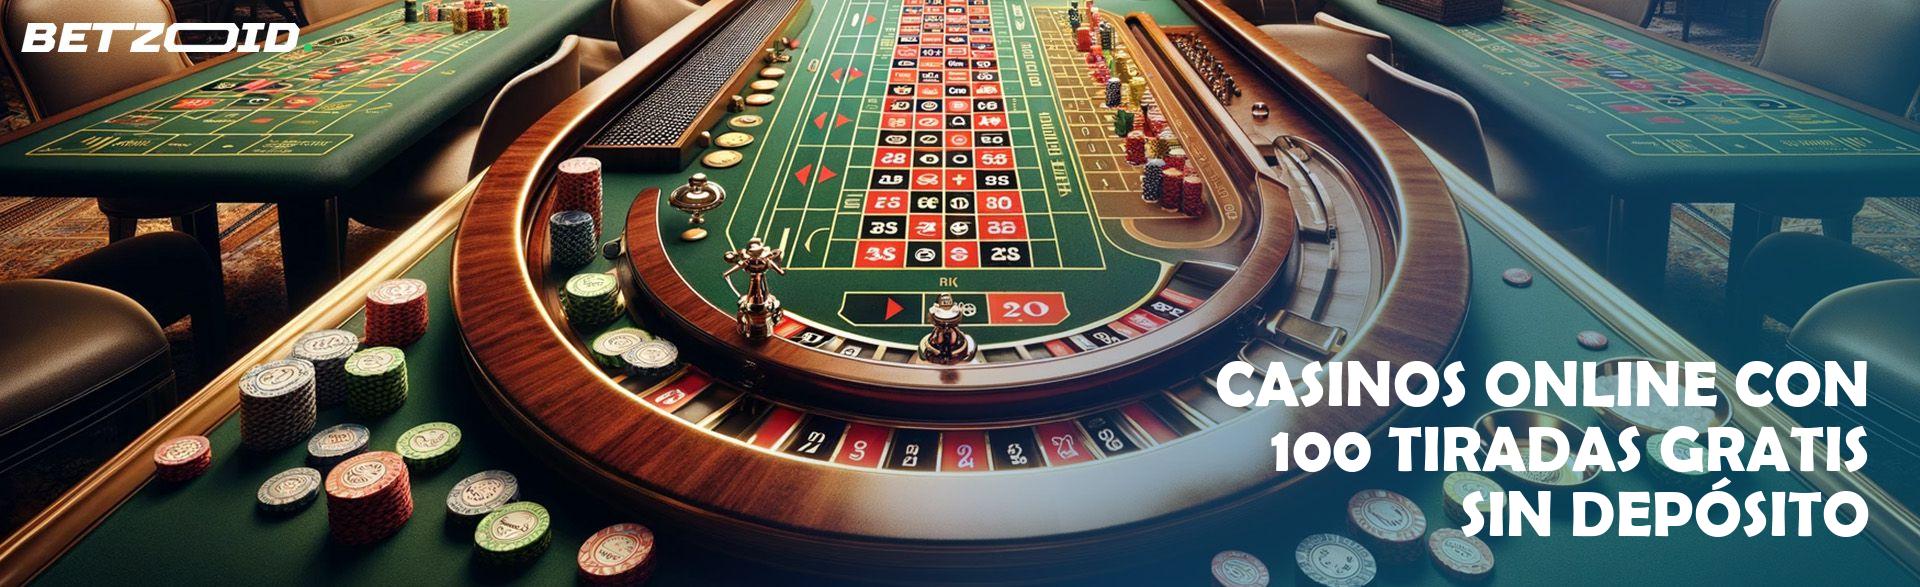 Casinos Online con 100 Tiradas Gratis sin Depósito.